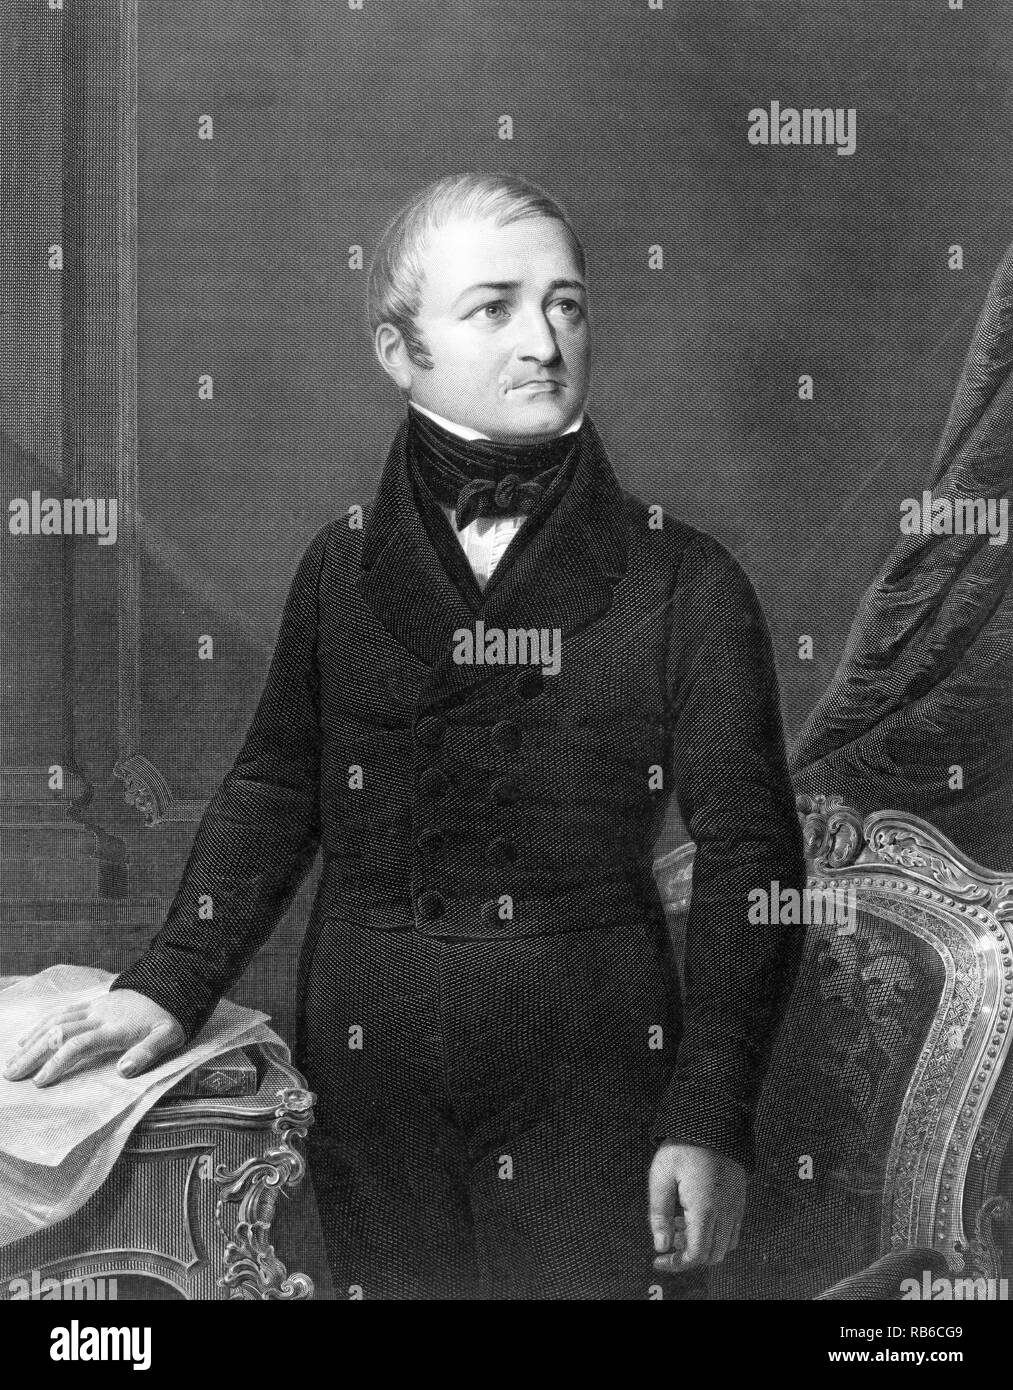 Adolphe Thiers, Marie Joseph Louis Adolphe Thiers (1797-1877), französischer Staatsmann und zweiten gewählten Präsidenten von Frankreich, und der erste Präsident der Französischen Dritten Republik. Stockfoto